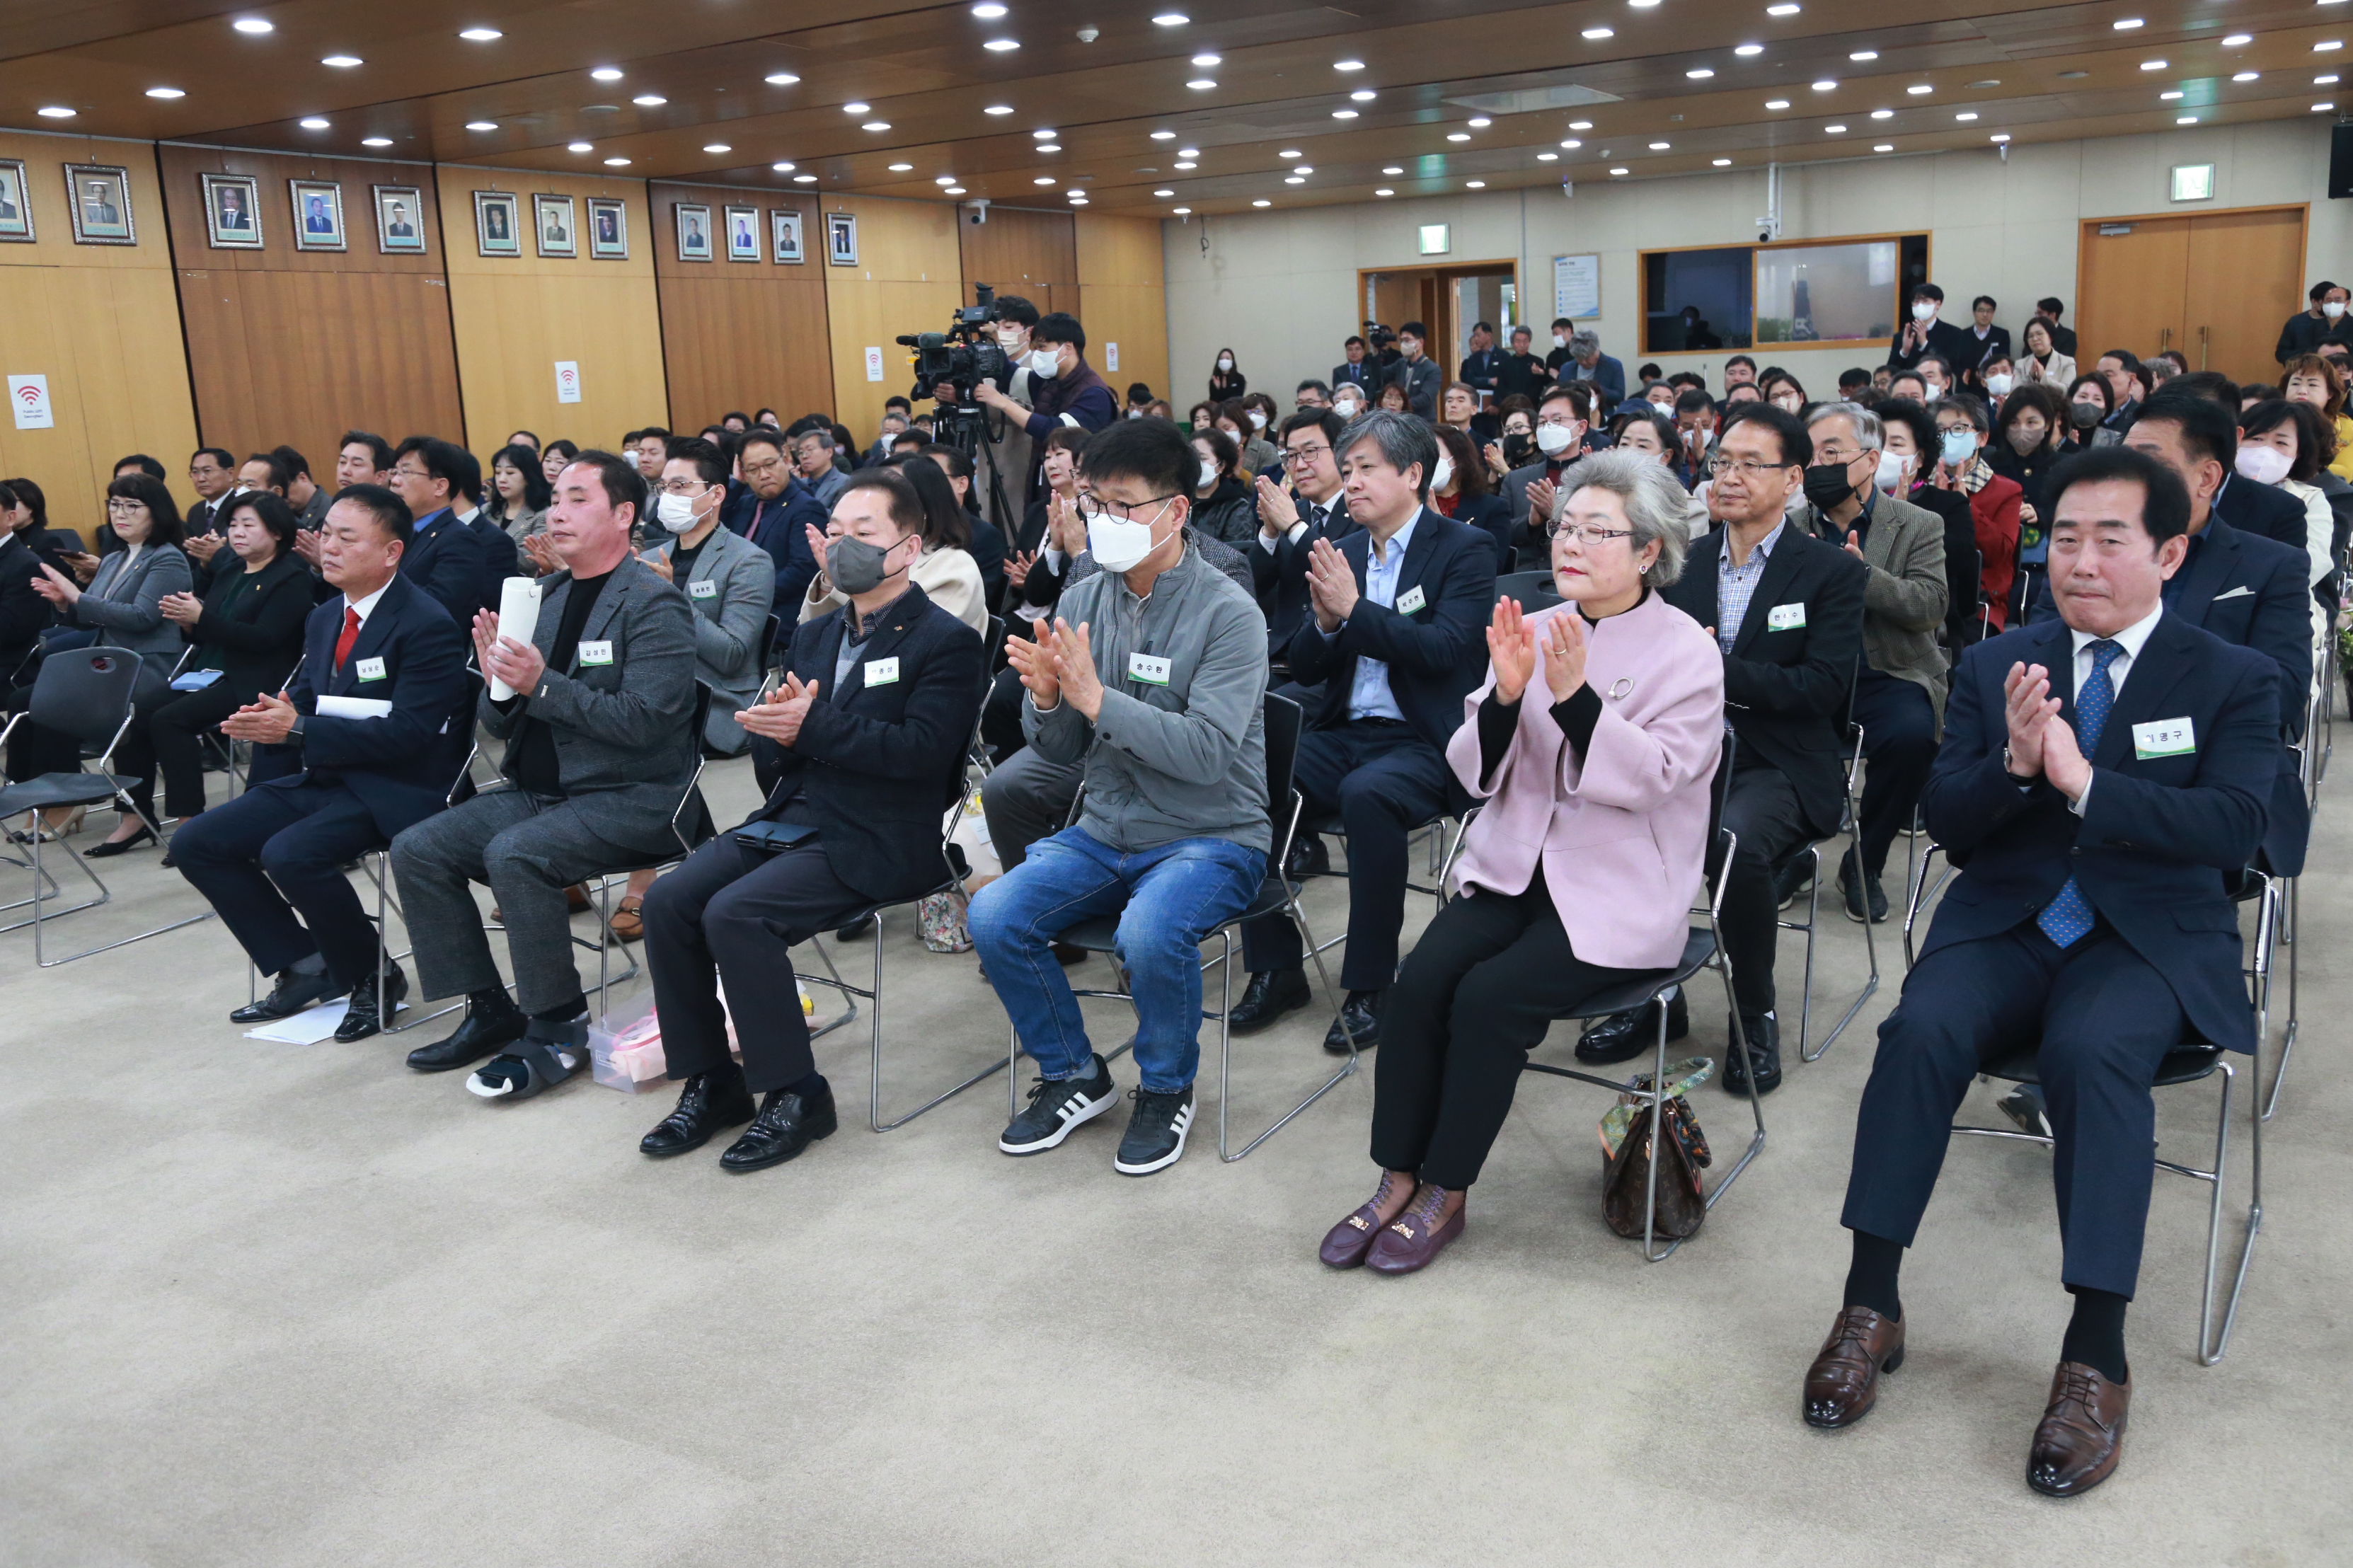 제12대 성남시 주민자치협의회장 이취임식 - 11